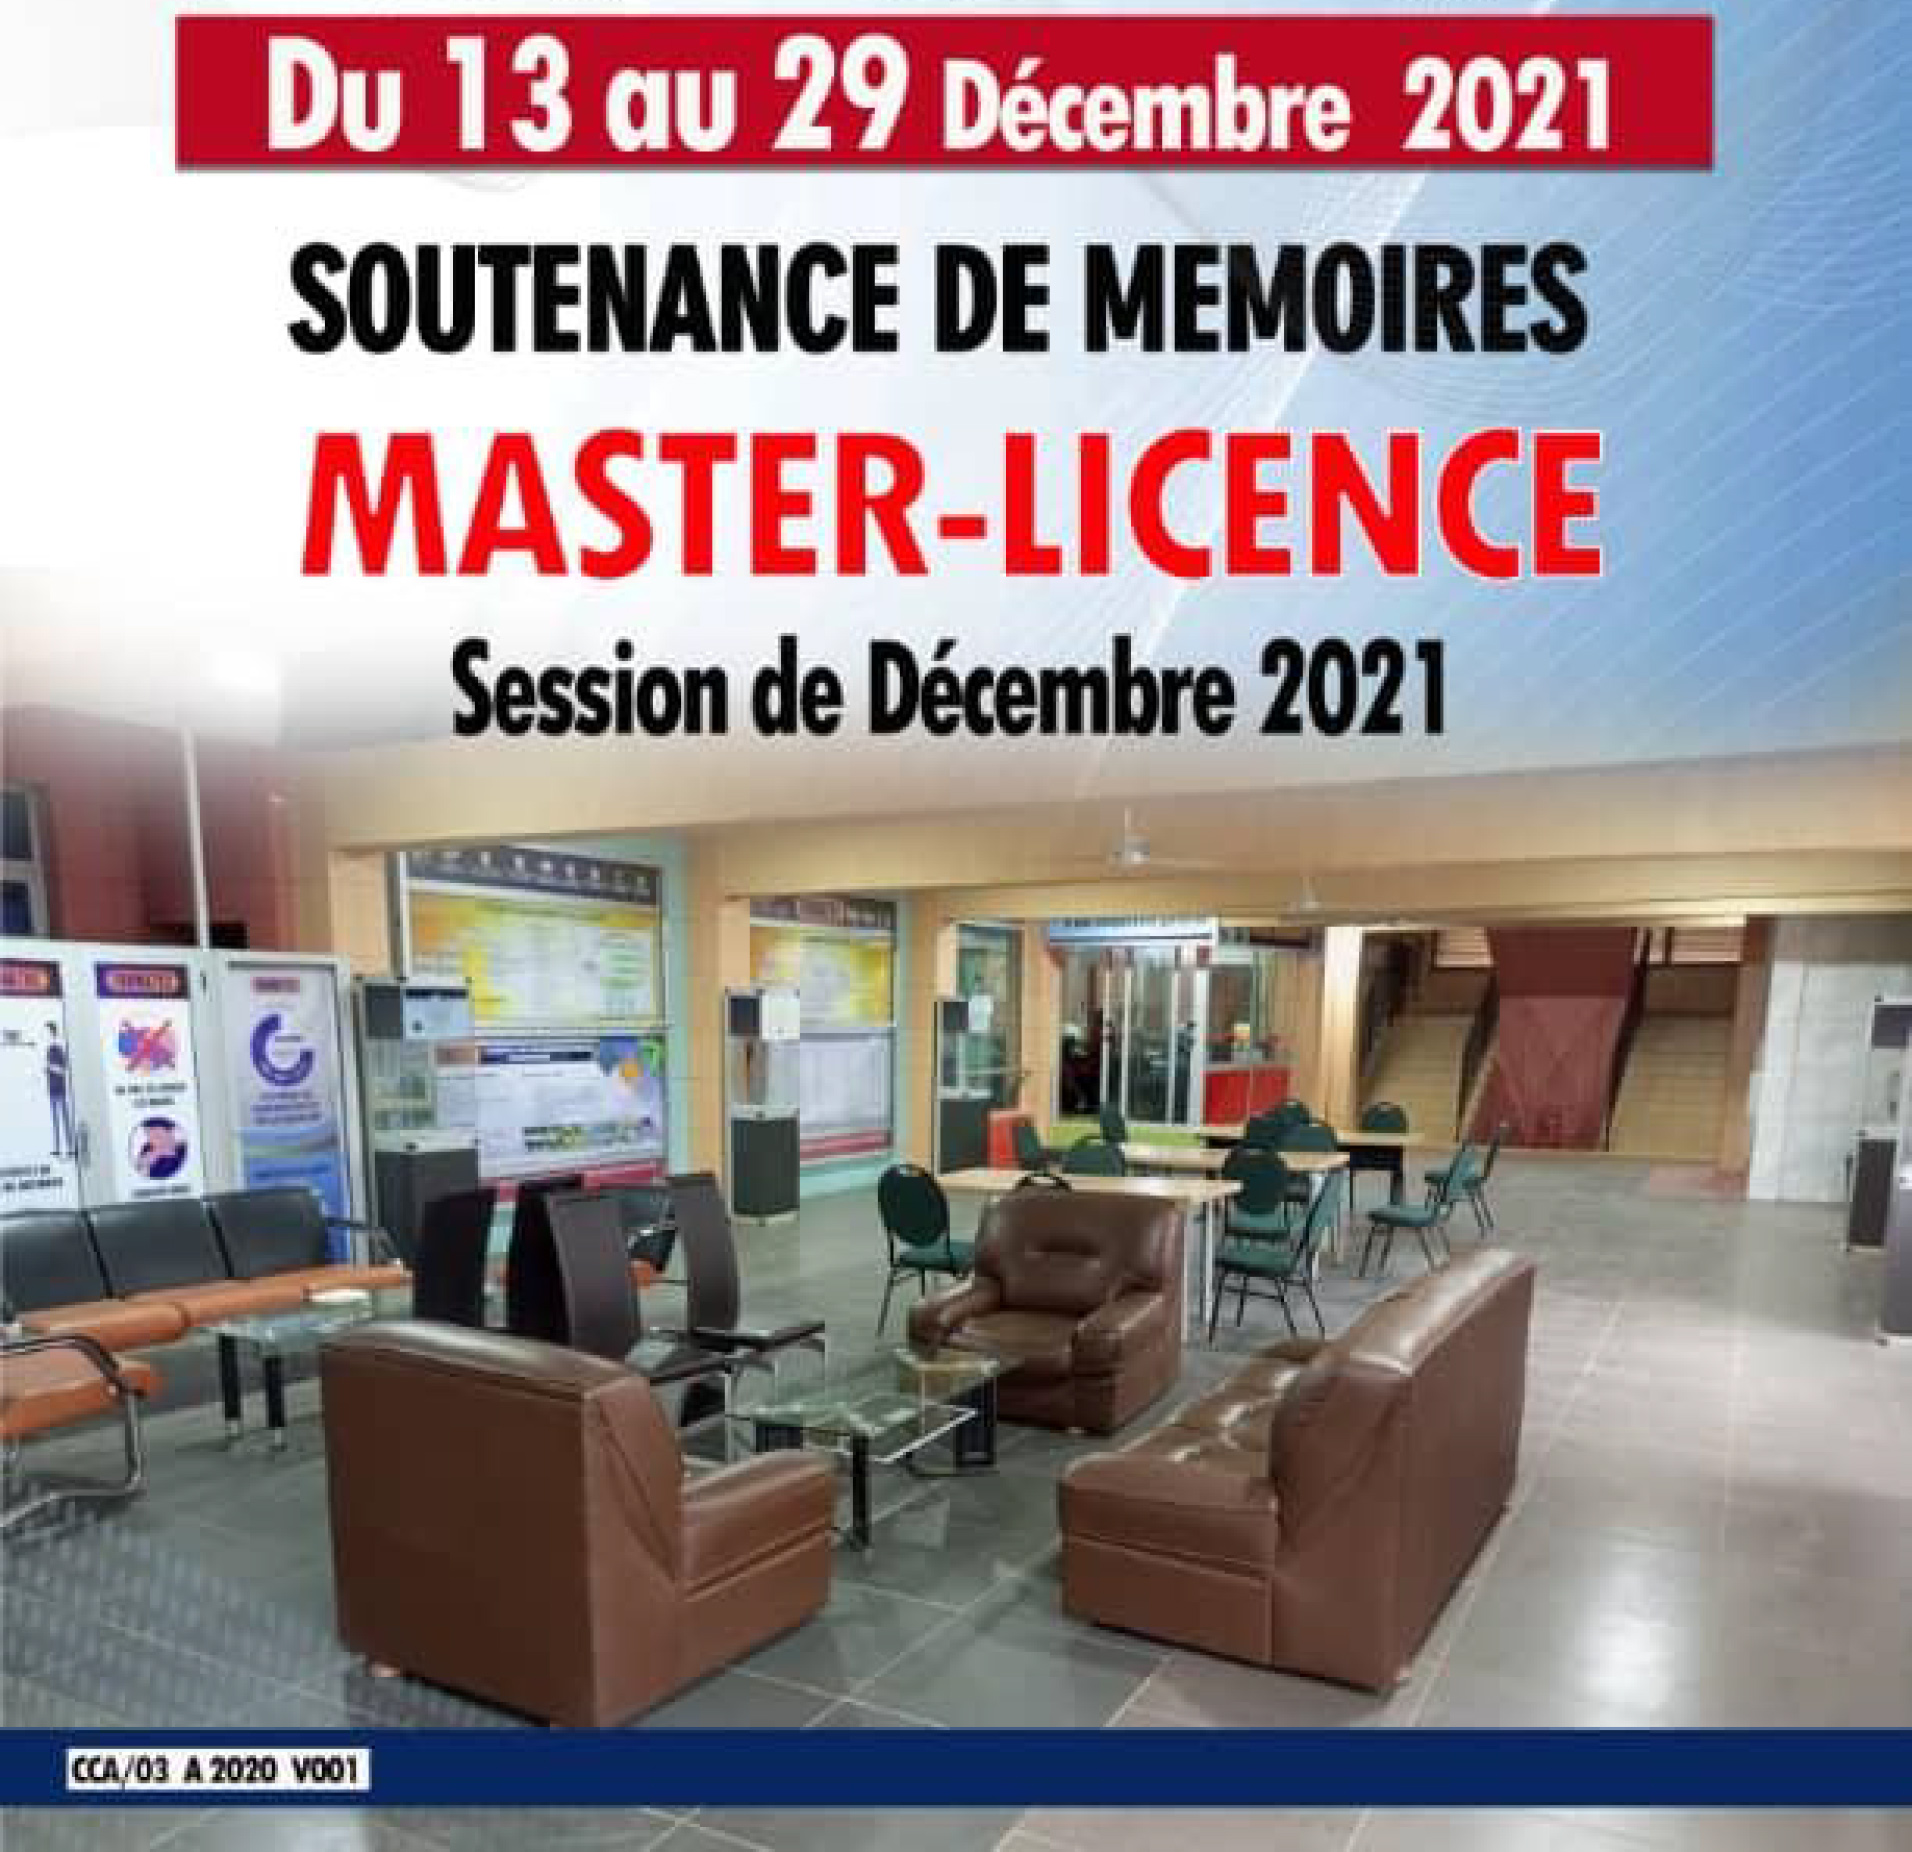 SOUTENANCE DE MEMOIRES MASTER-LICENCE SESSION DECEMBRE 2021